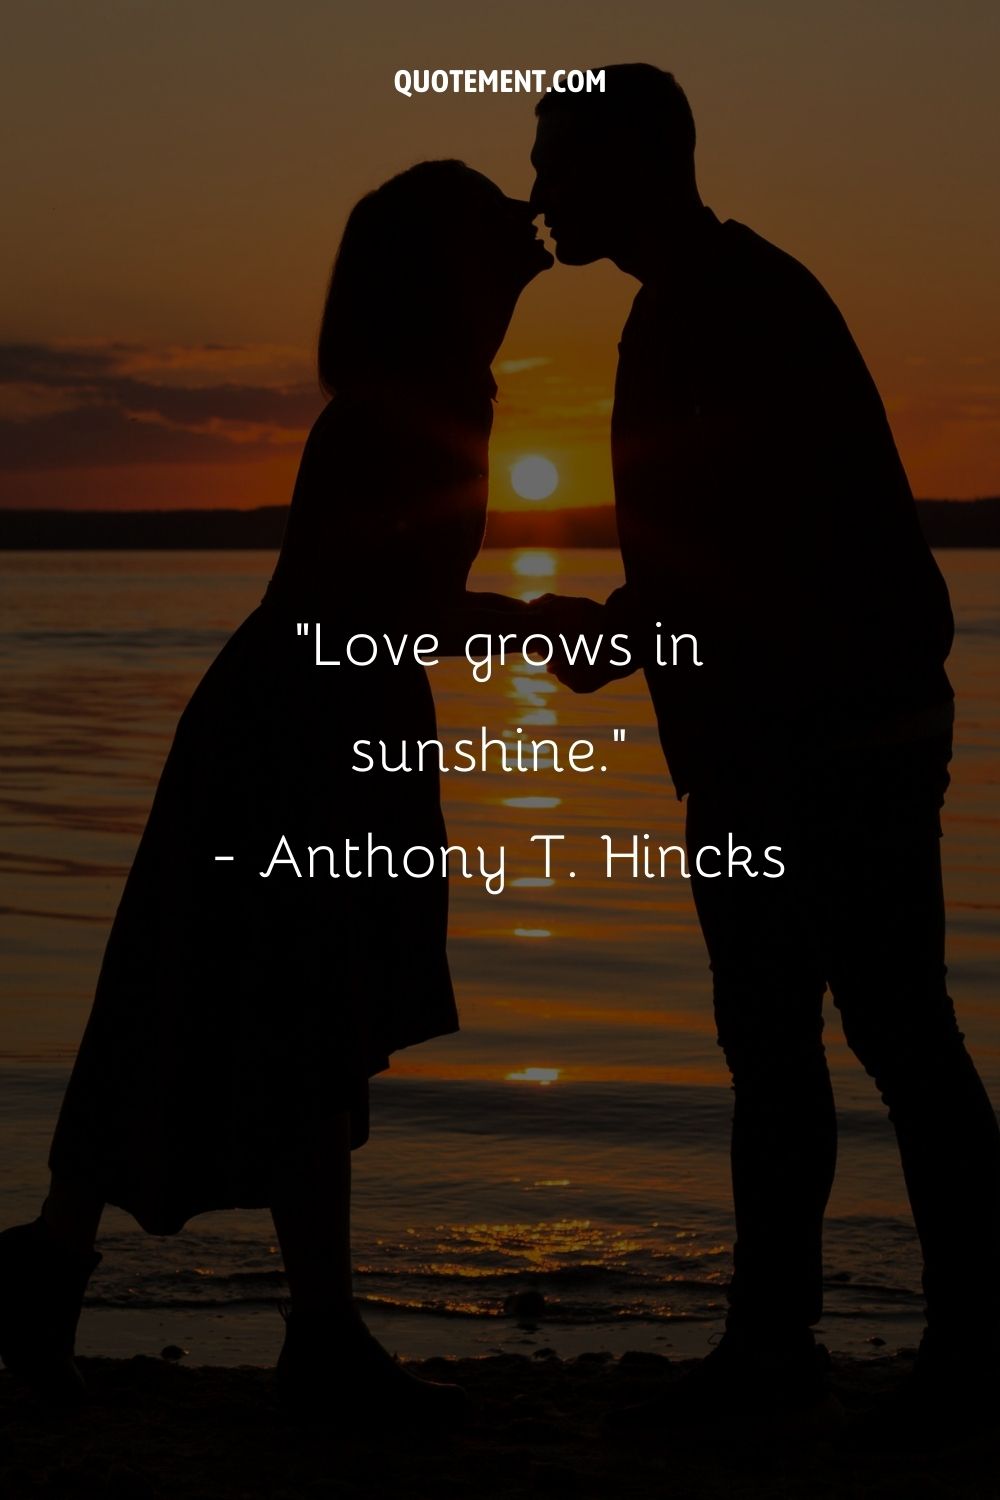 Love grows in sunshine.